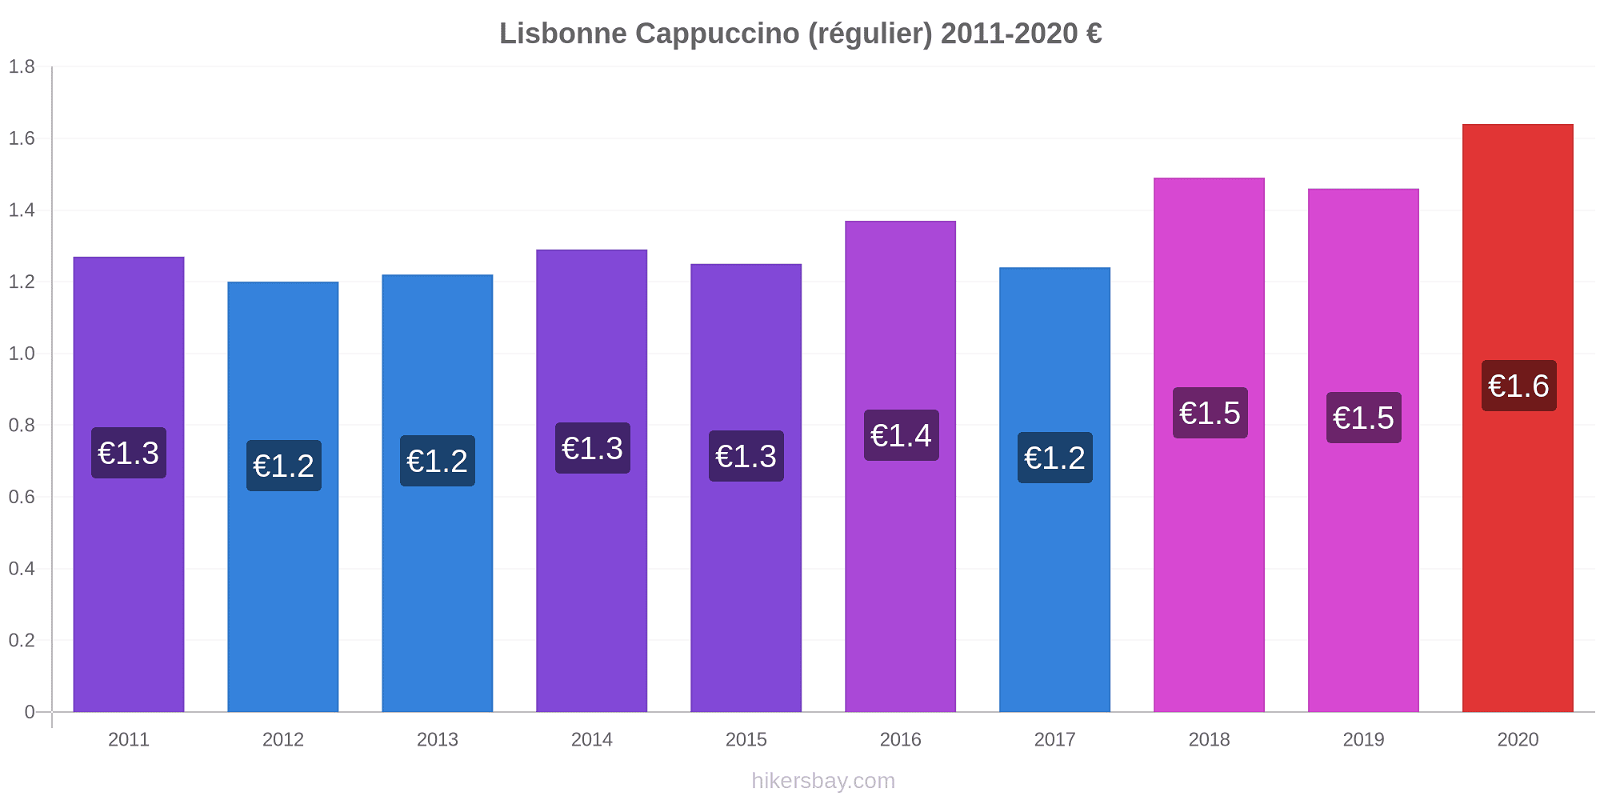 Lisbonne changements de prix Cappuccino (régulier) hikersbay.com